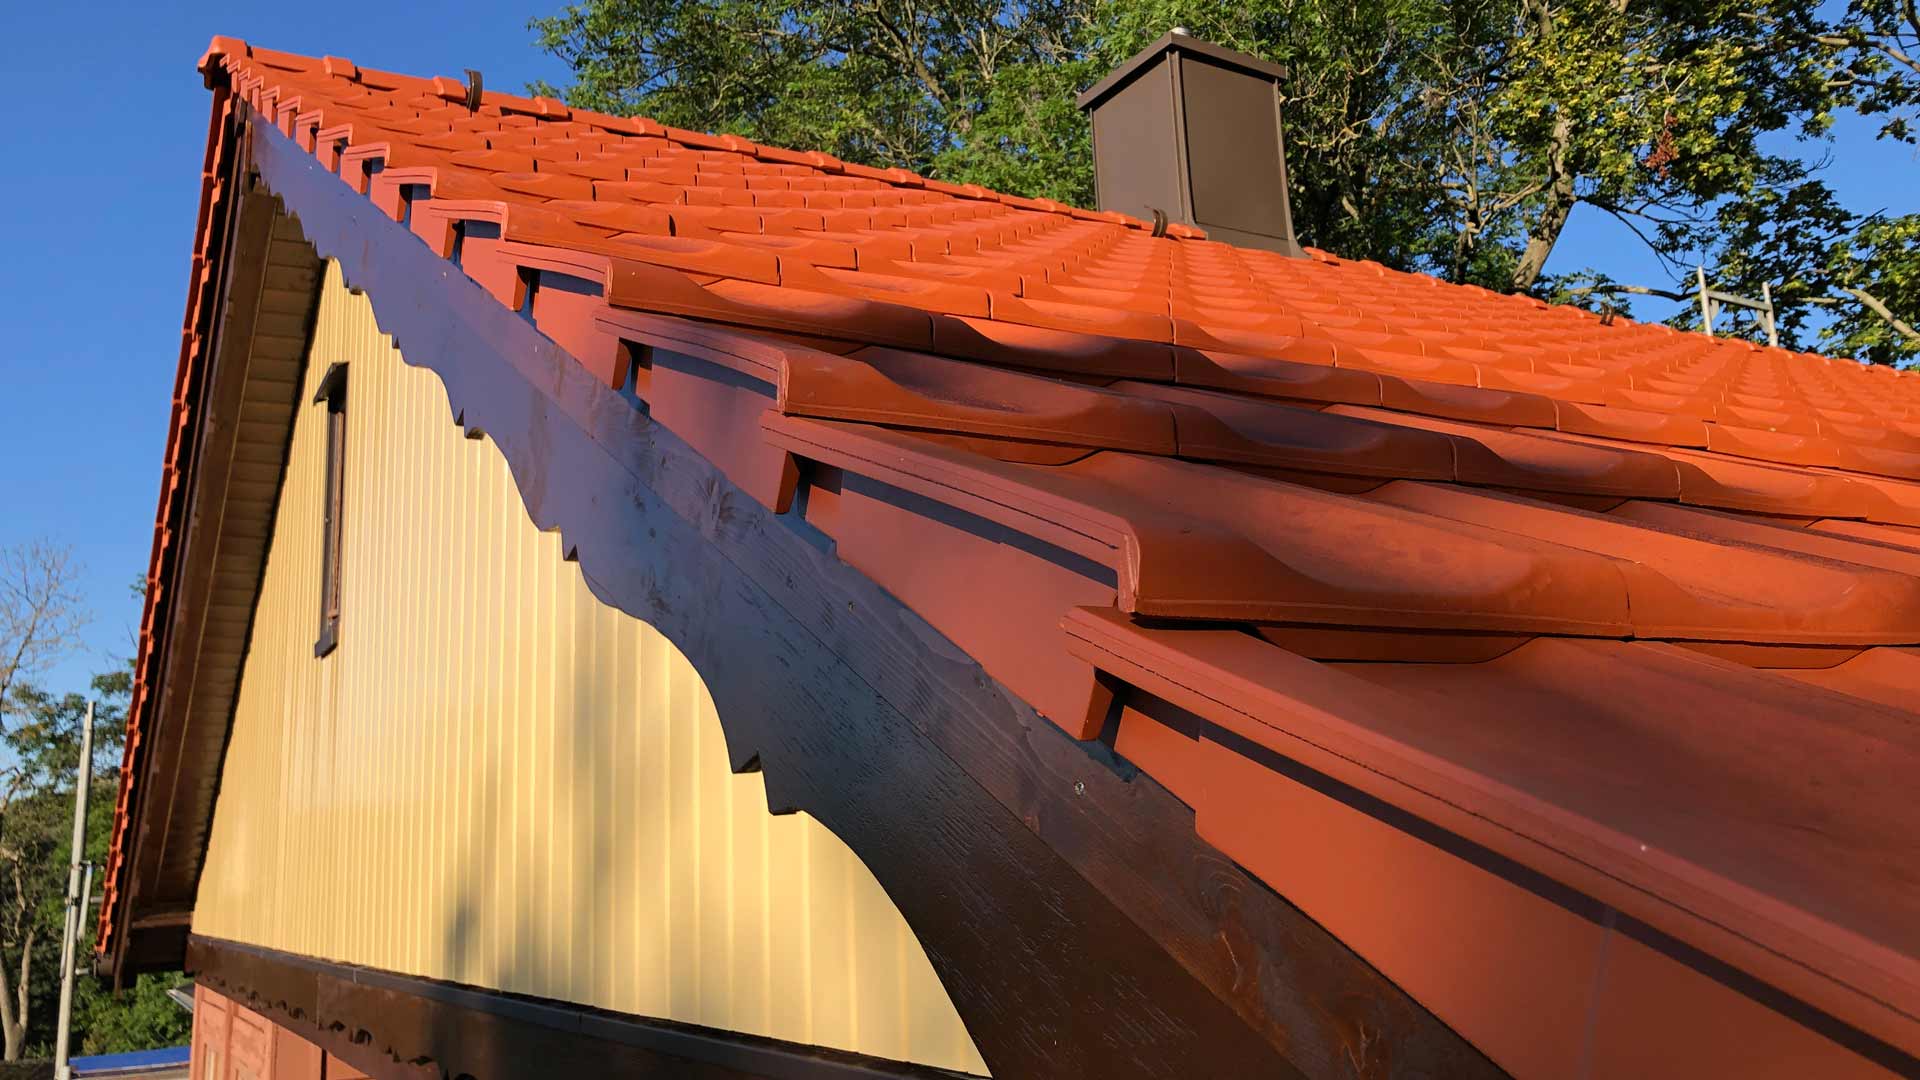 Renoviertes Holzdach mit schmuckgiebelrestauration